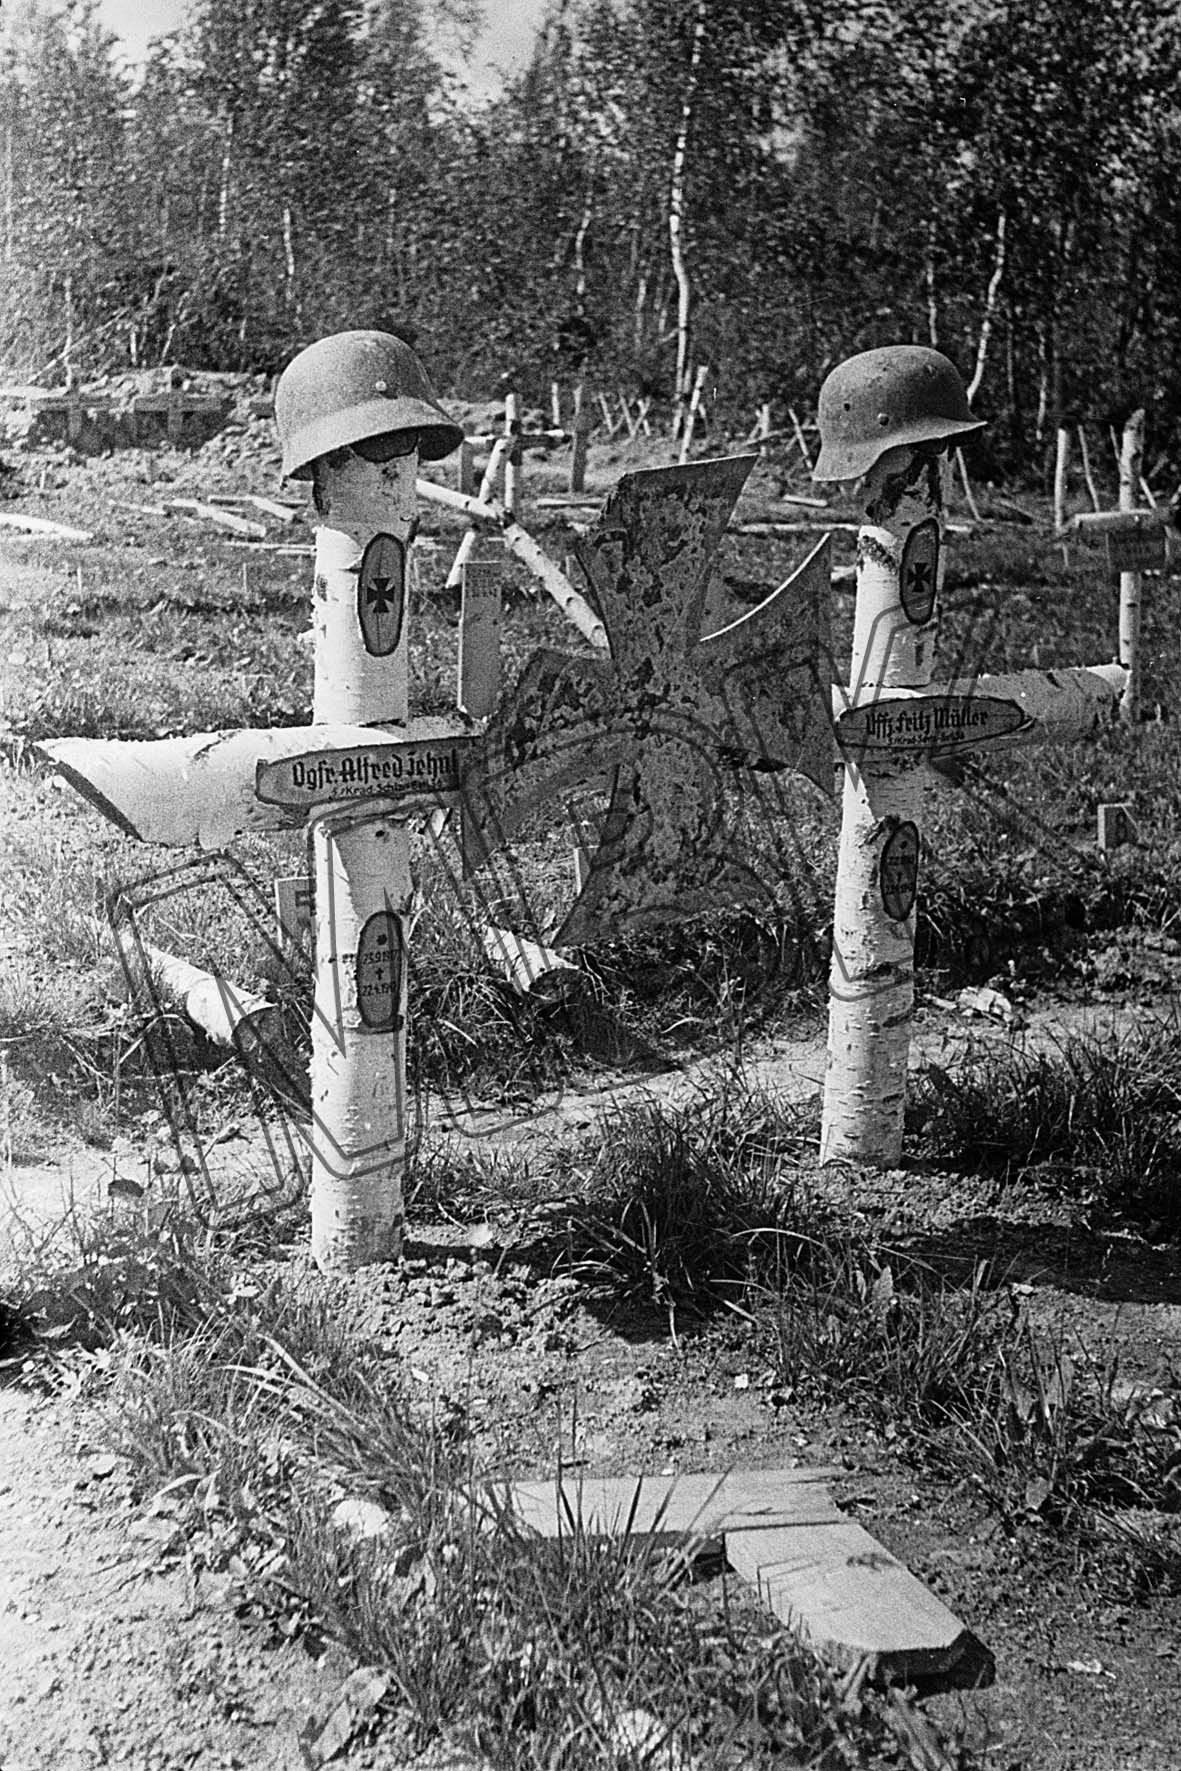 Fotografie: Deutscher Soldatenfriedhof, Gebiet Smolensk, August 1942 (Museum Berlin-Karlshorst RR-P)